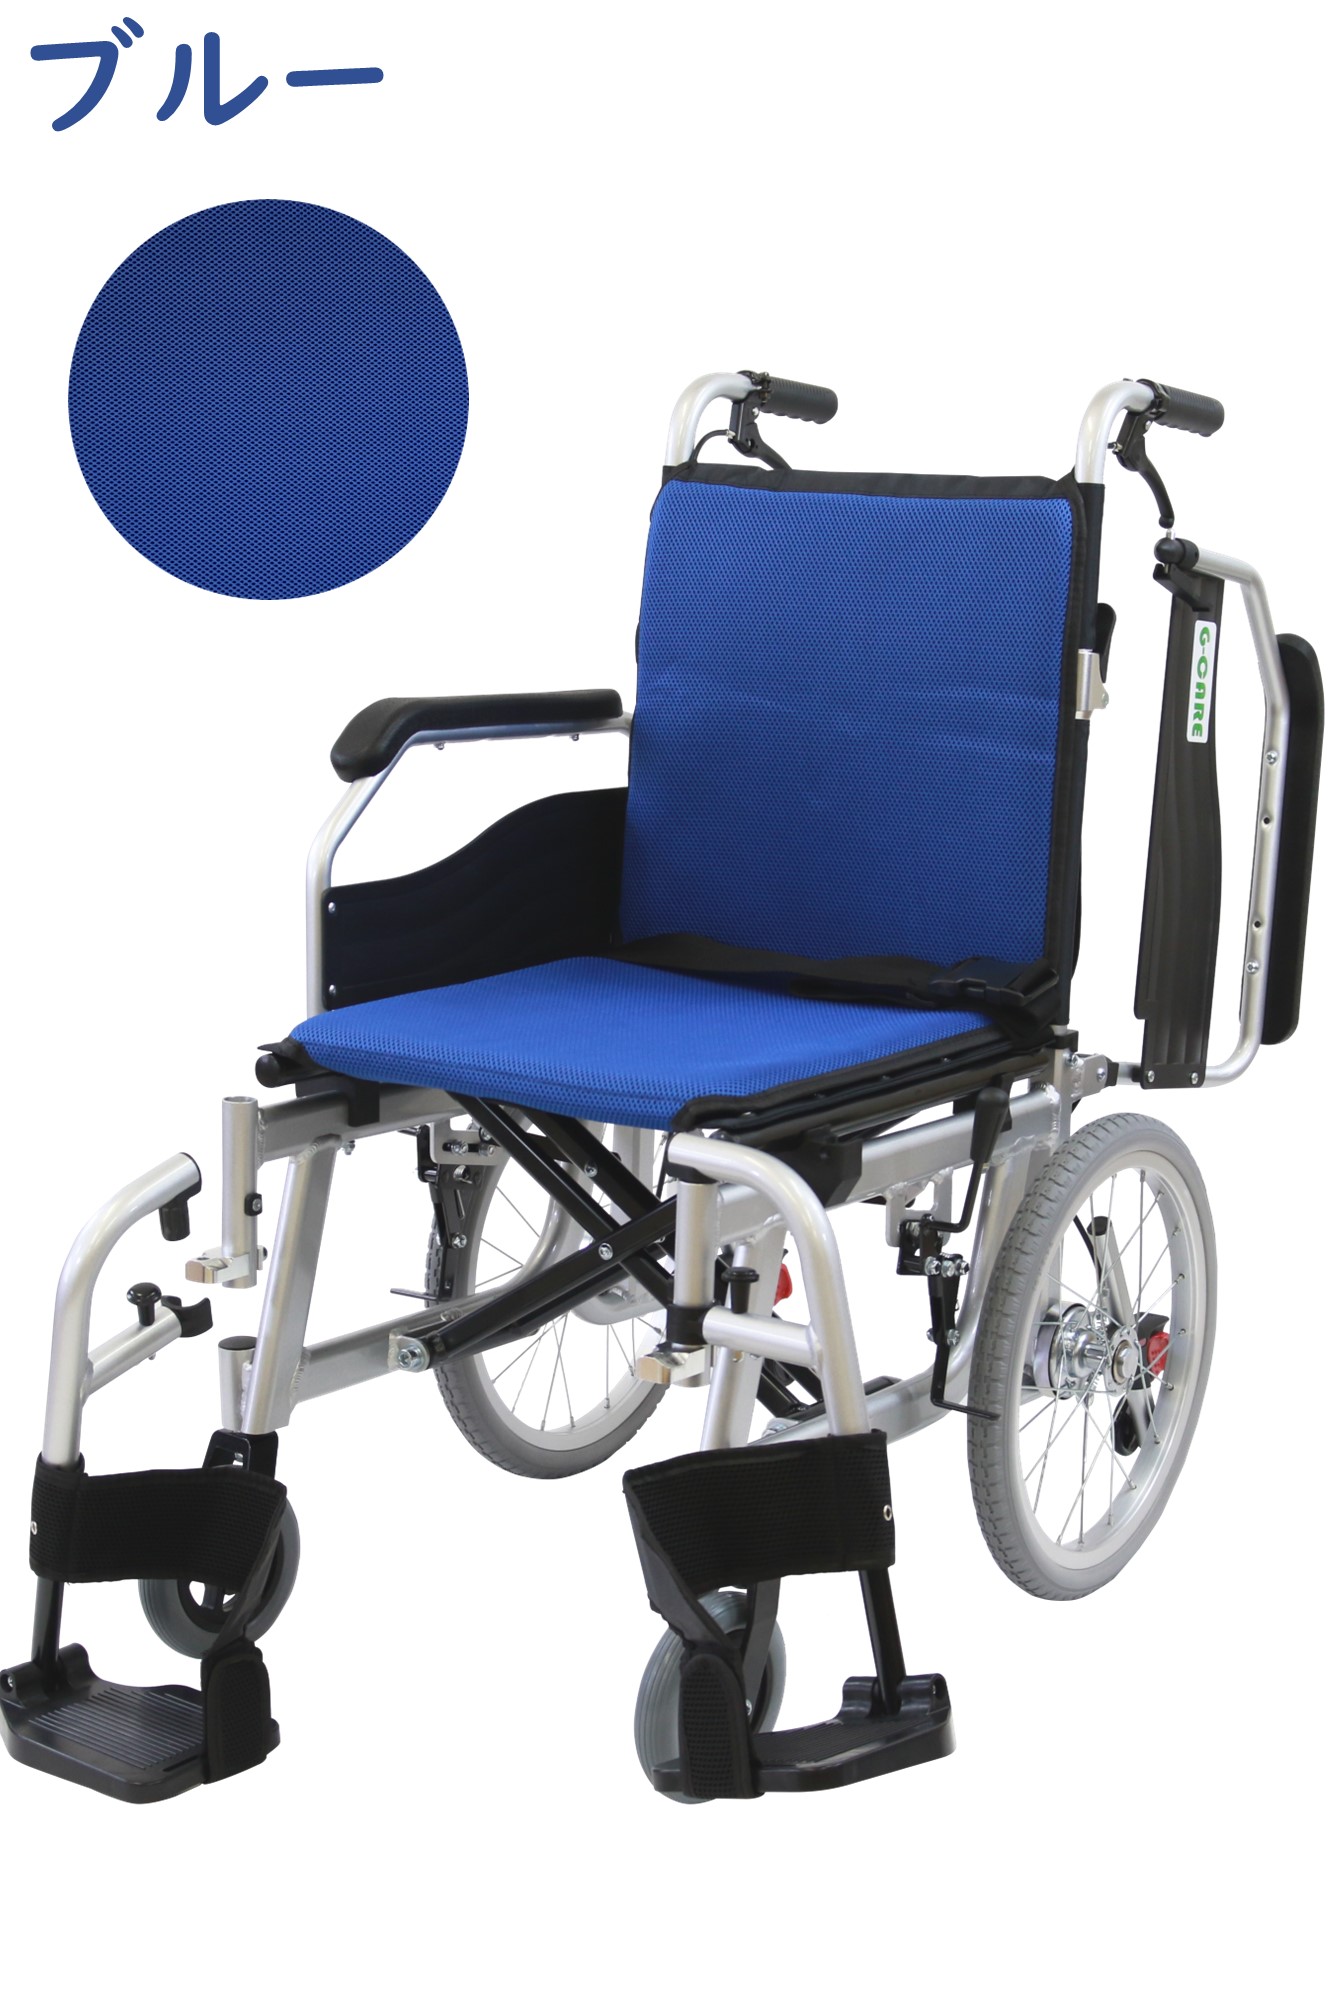 多機能介助式車椅子 マルピー【介助式車椅子】【即日出荷可能品 